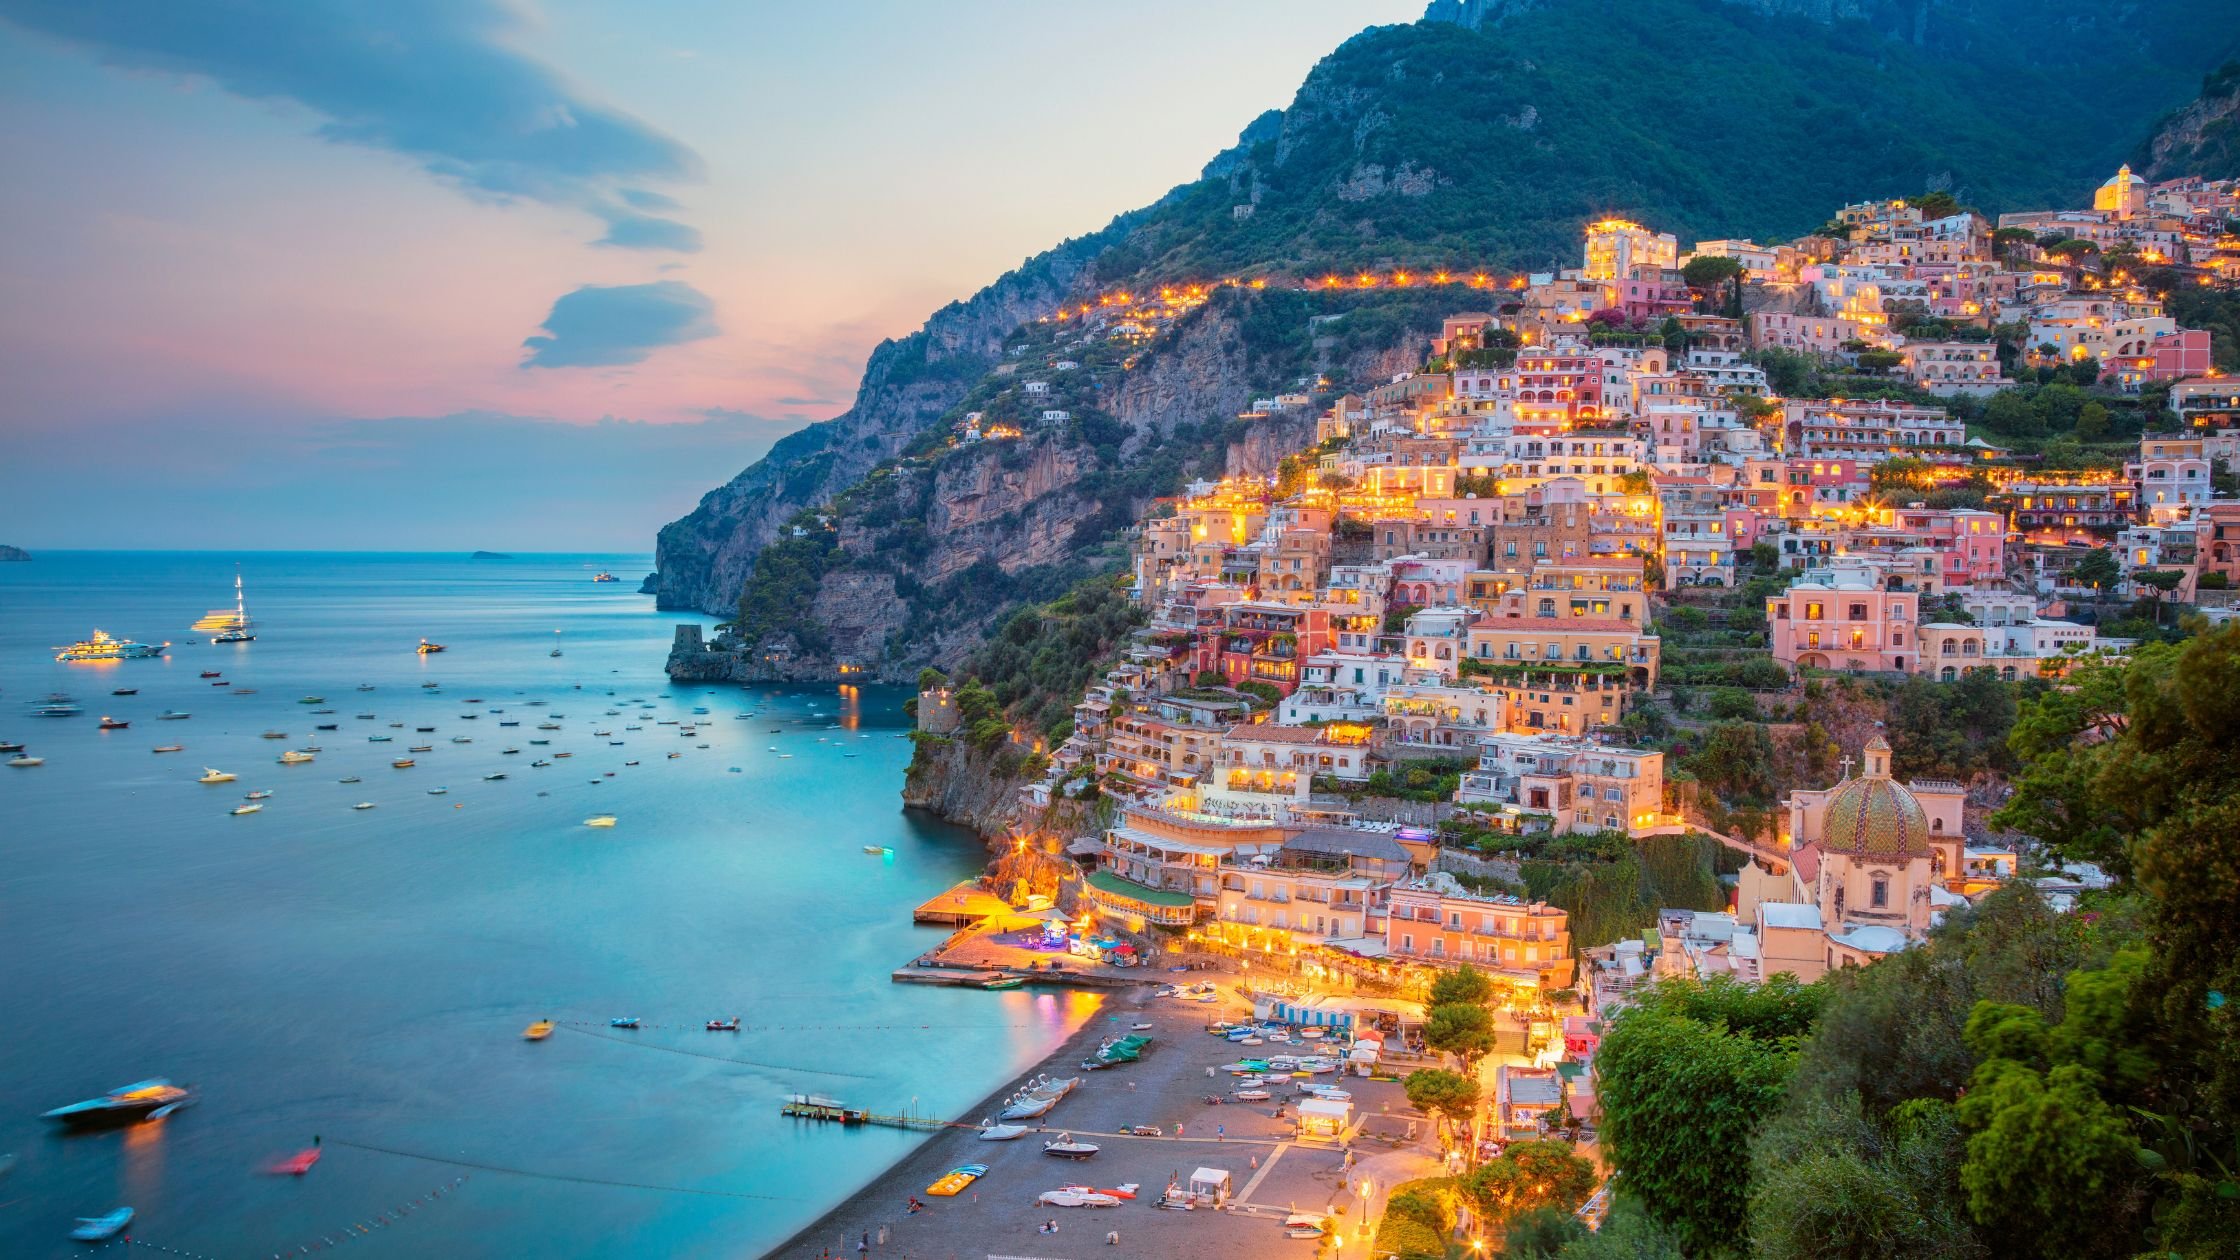 La costa de Amalfi es un tramo de 50 km de la costa sur de la península de Sorrento